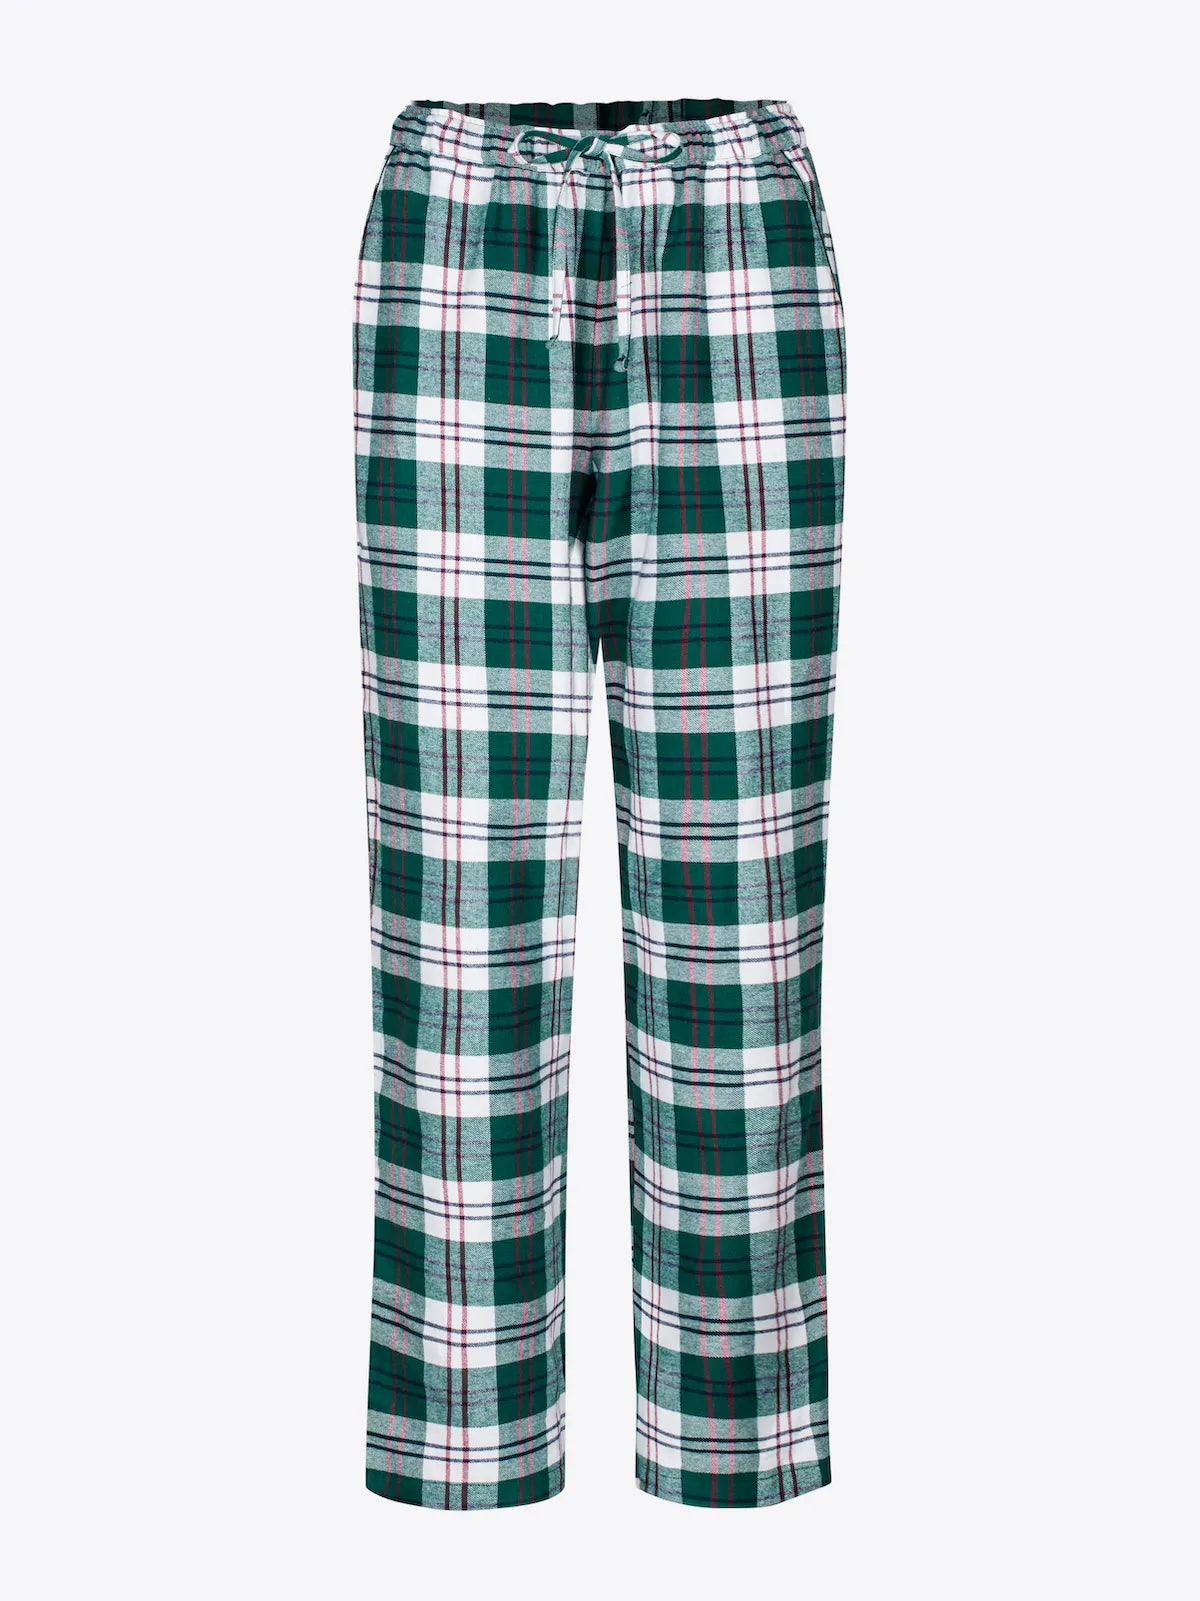 
                  
                    Luna Pyjama Pants
                  
                